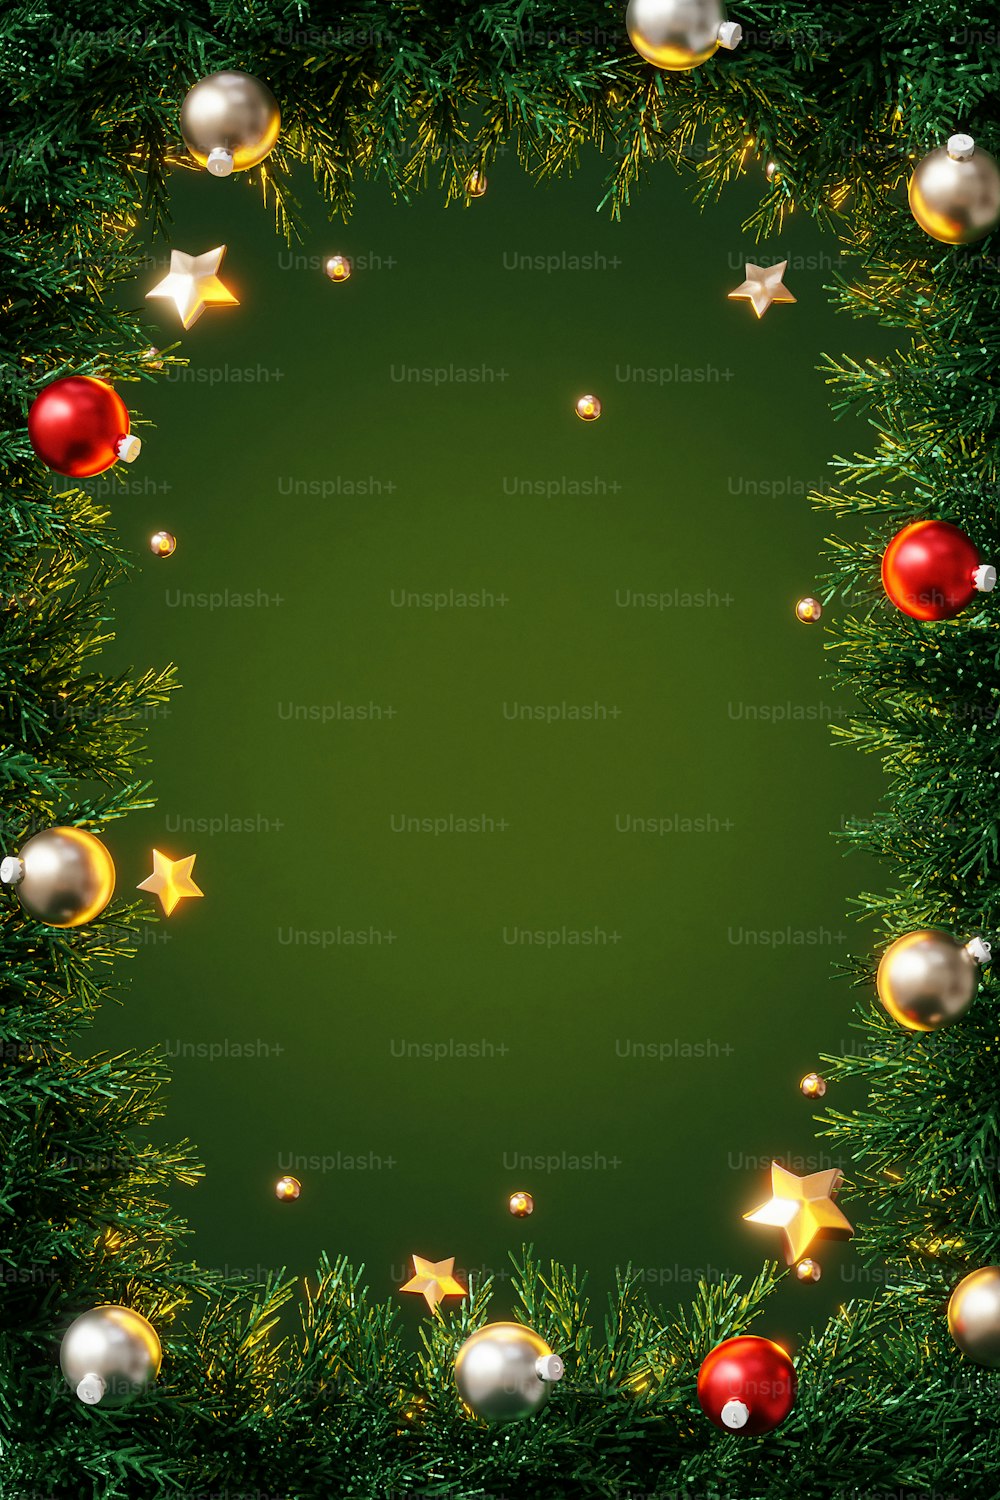 Un fondo verde con adornos navideños y estrellas